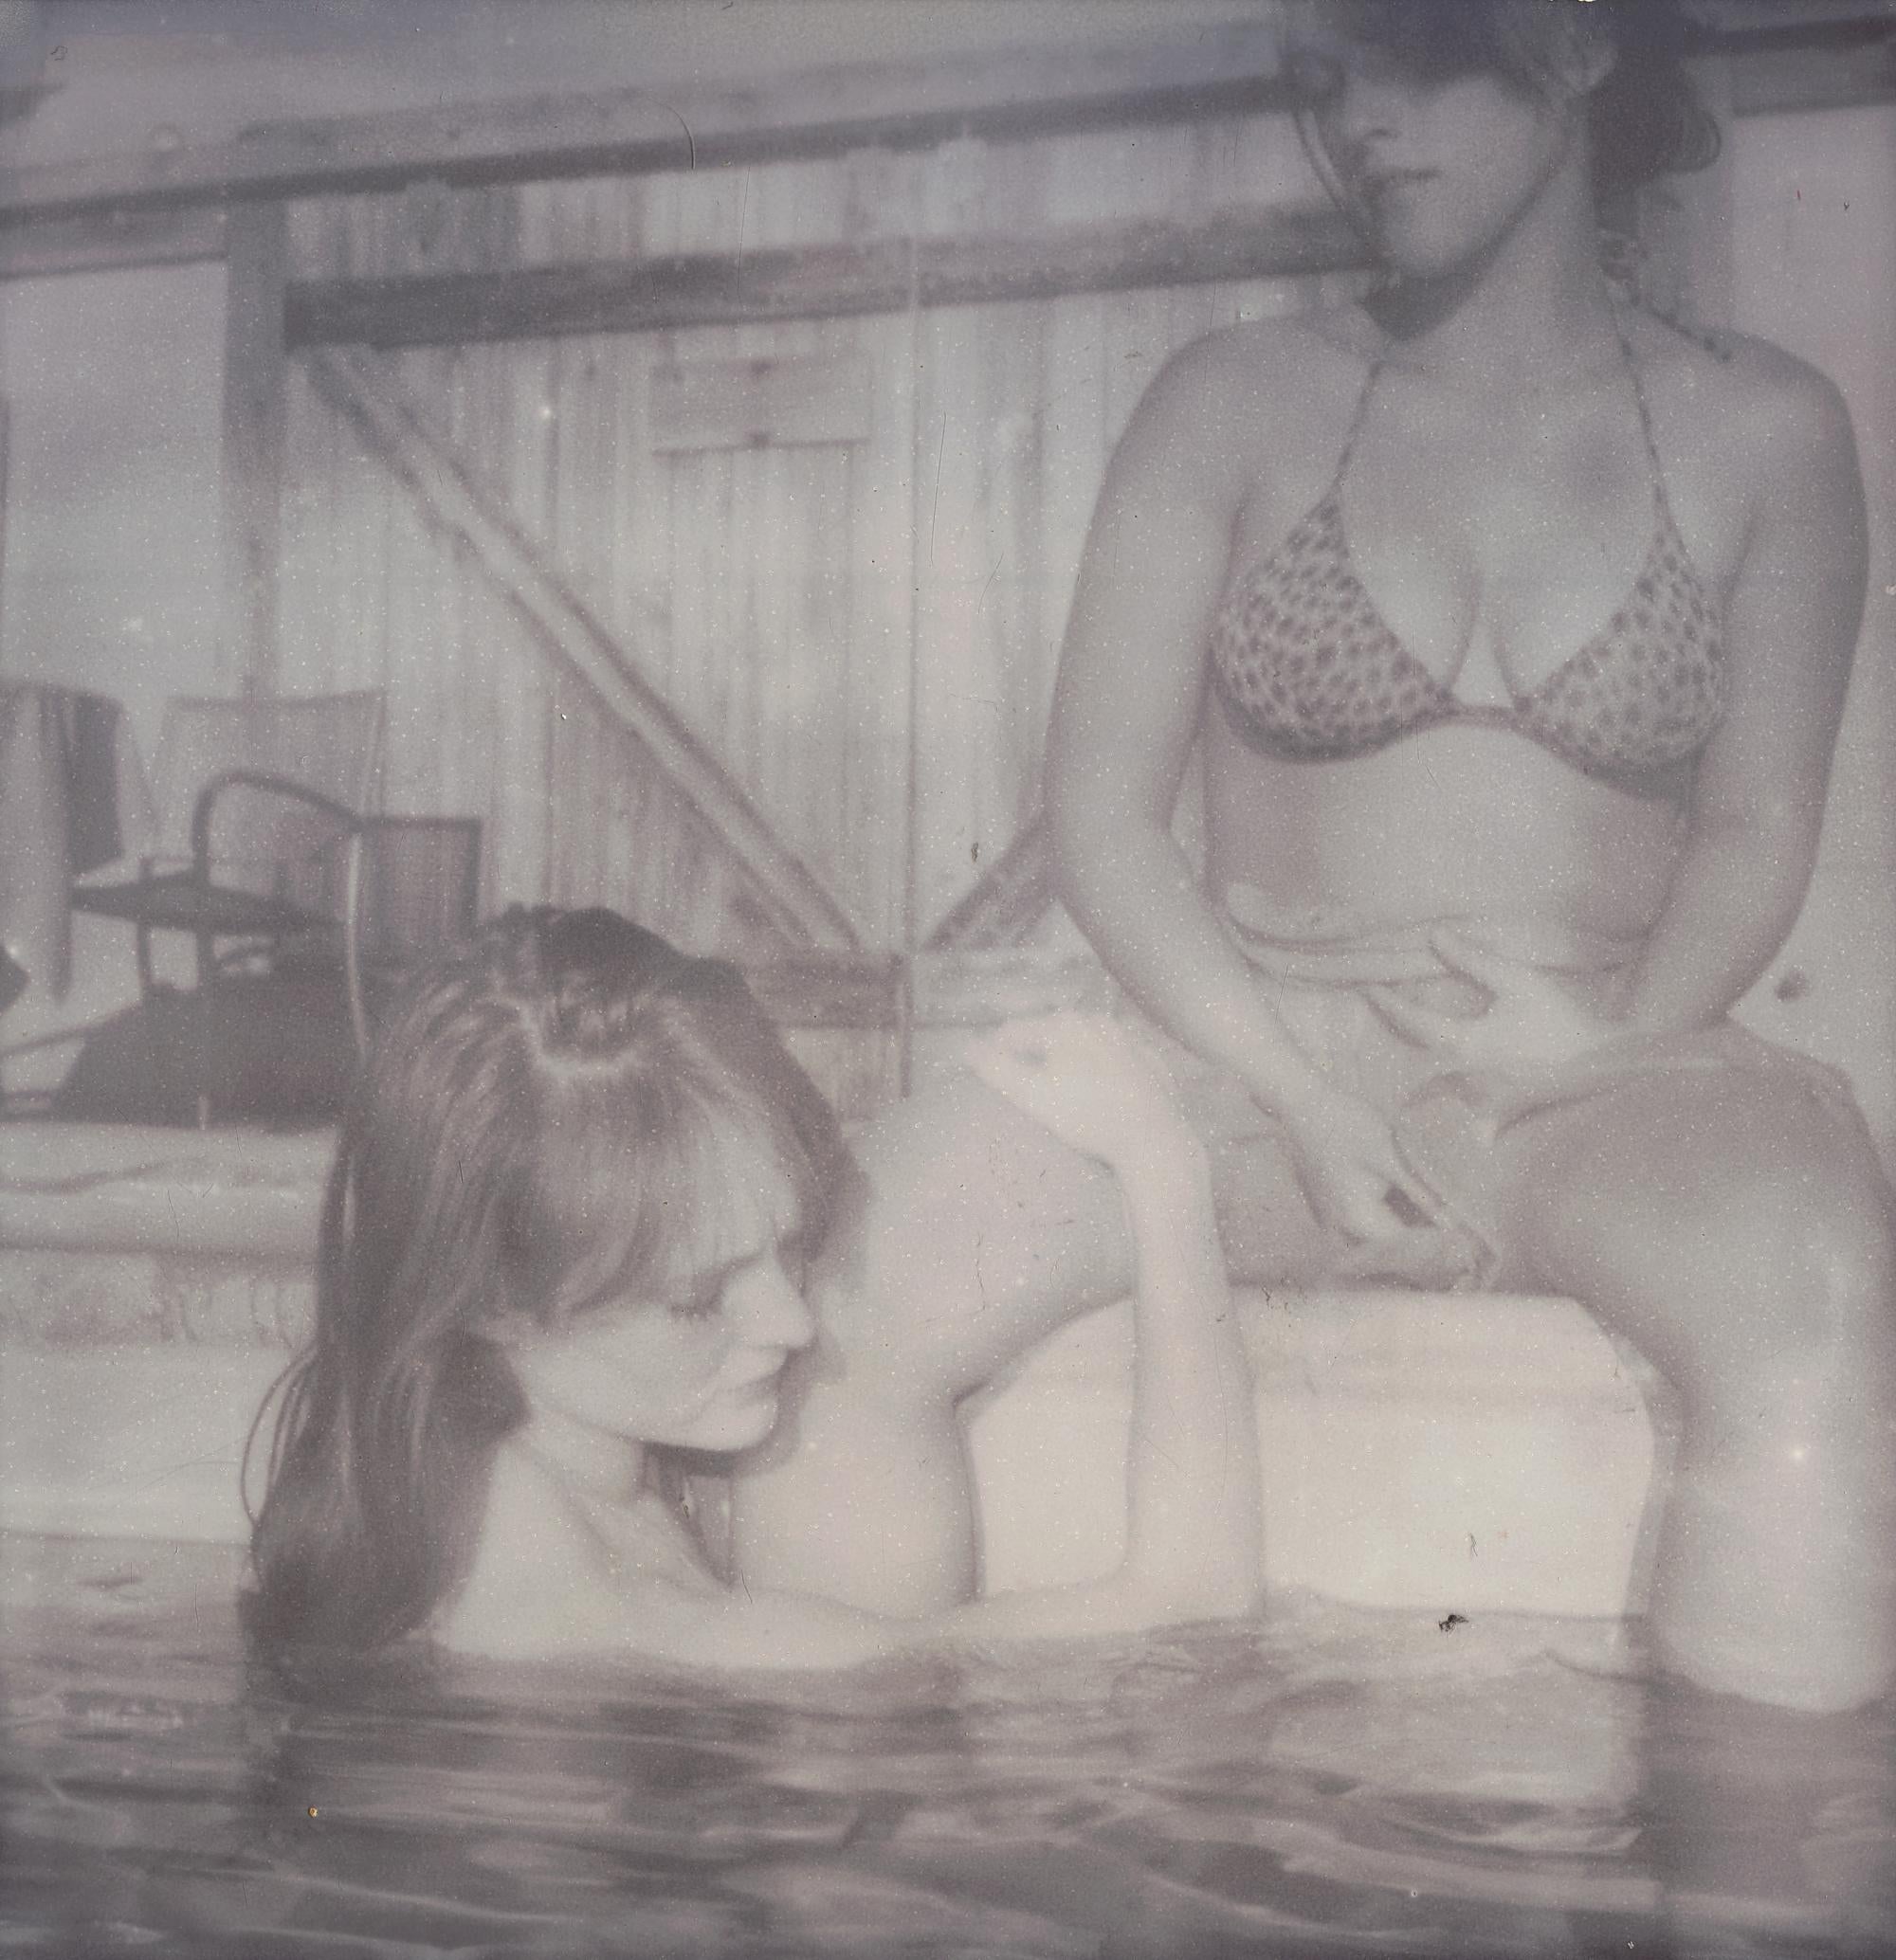 Stefanie Schneider Portrait Photograph – Gänseblümchen und Austen im Pool (Till Death do us part) – Polaroid, Figurative, Frauen